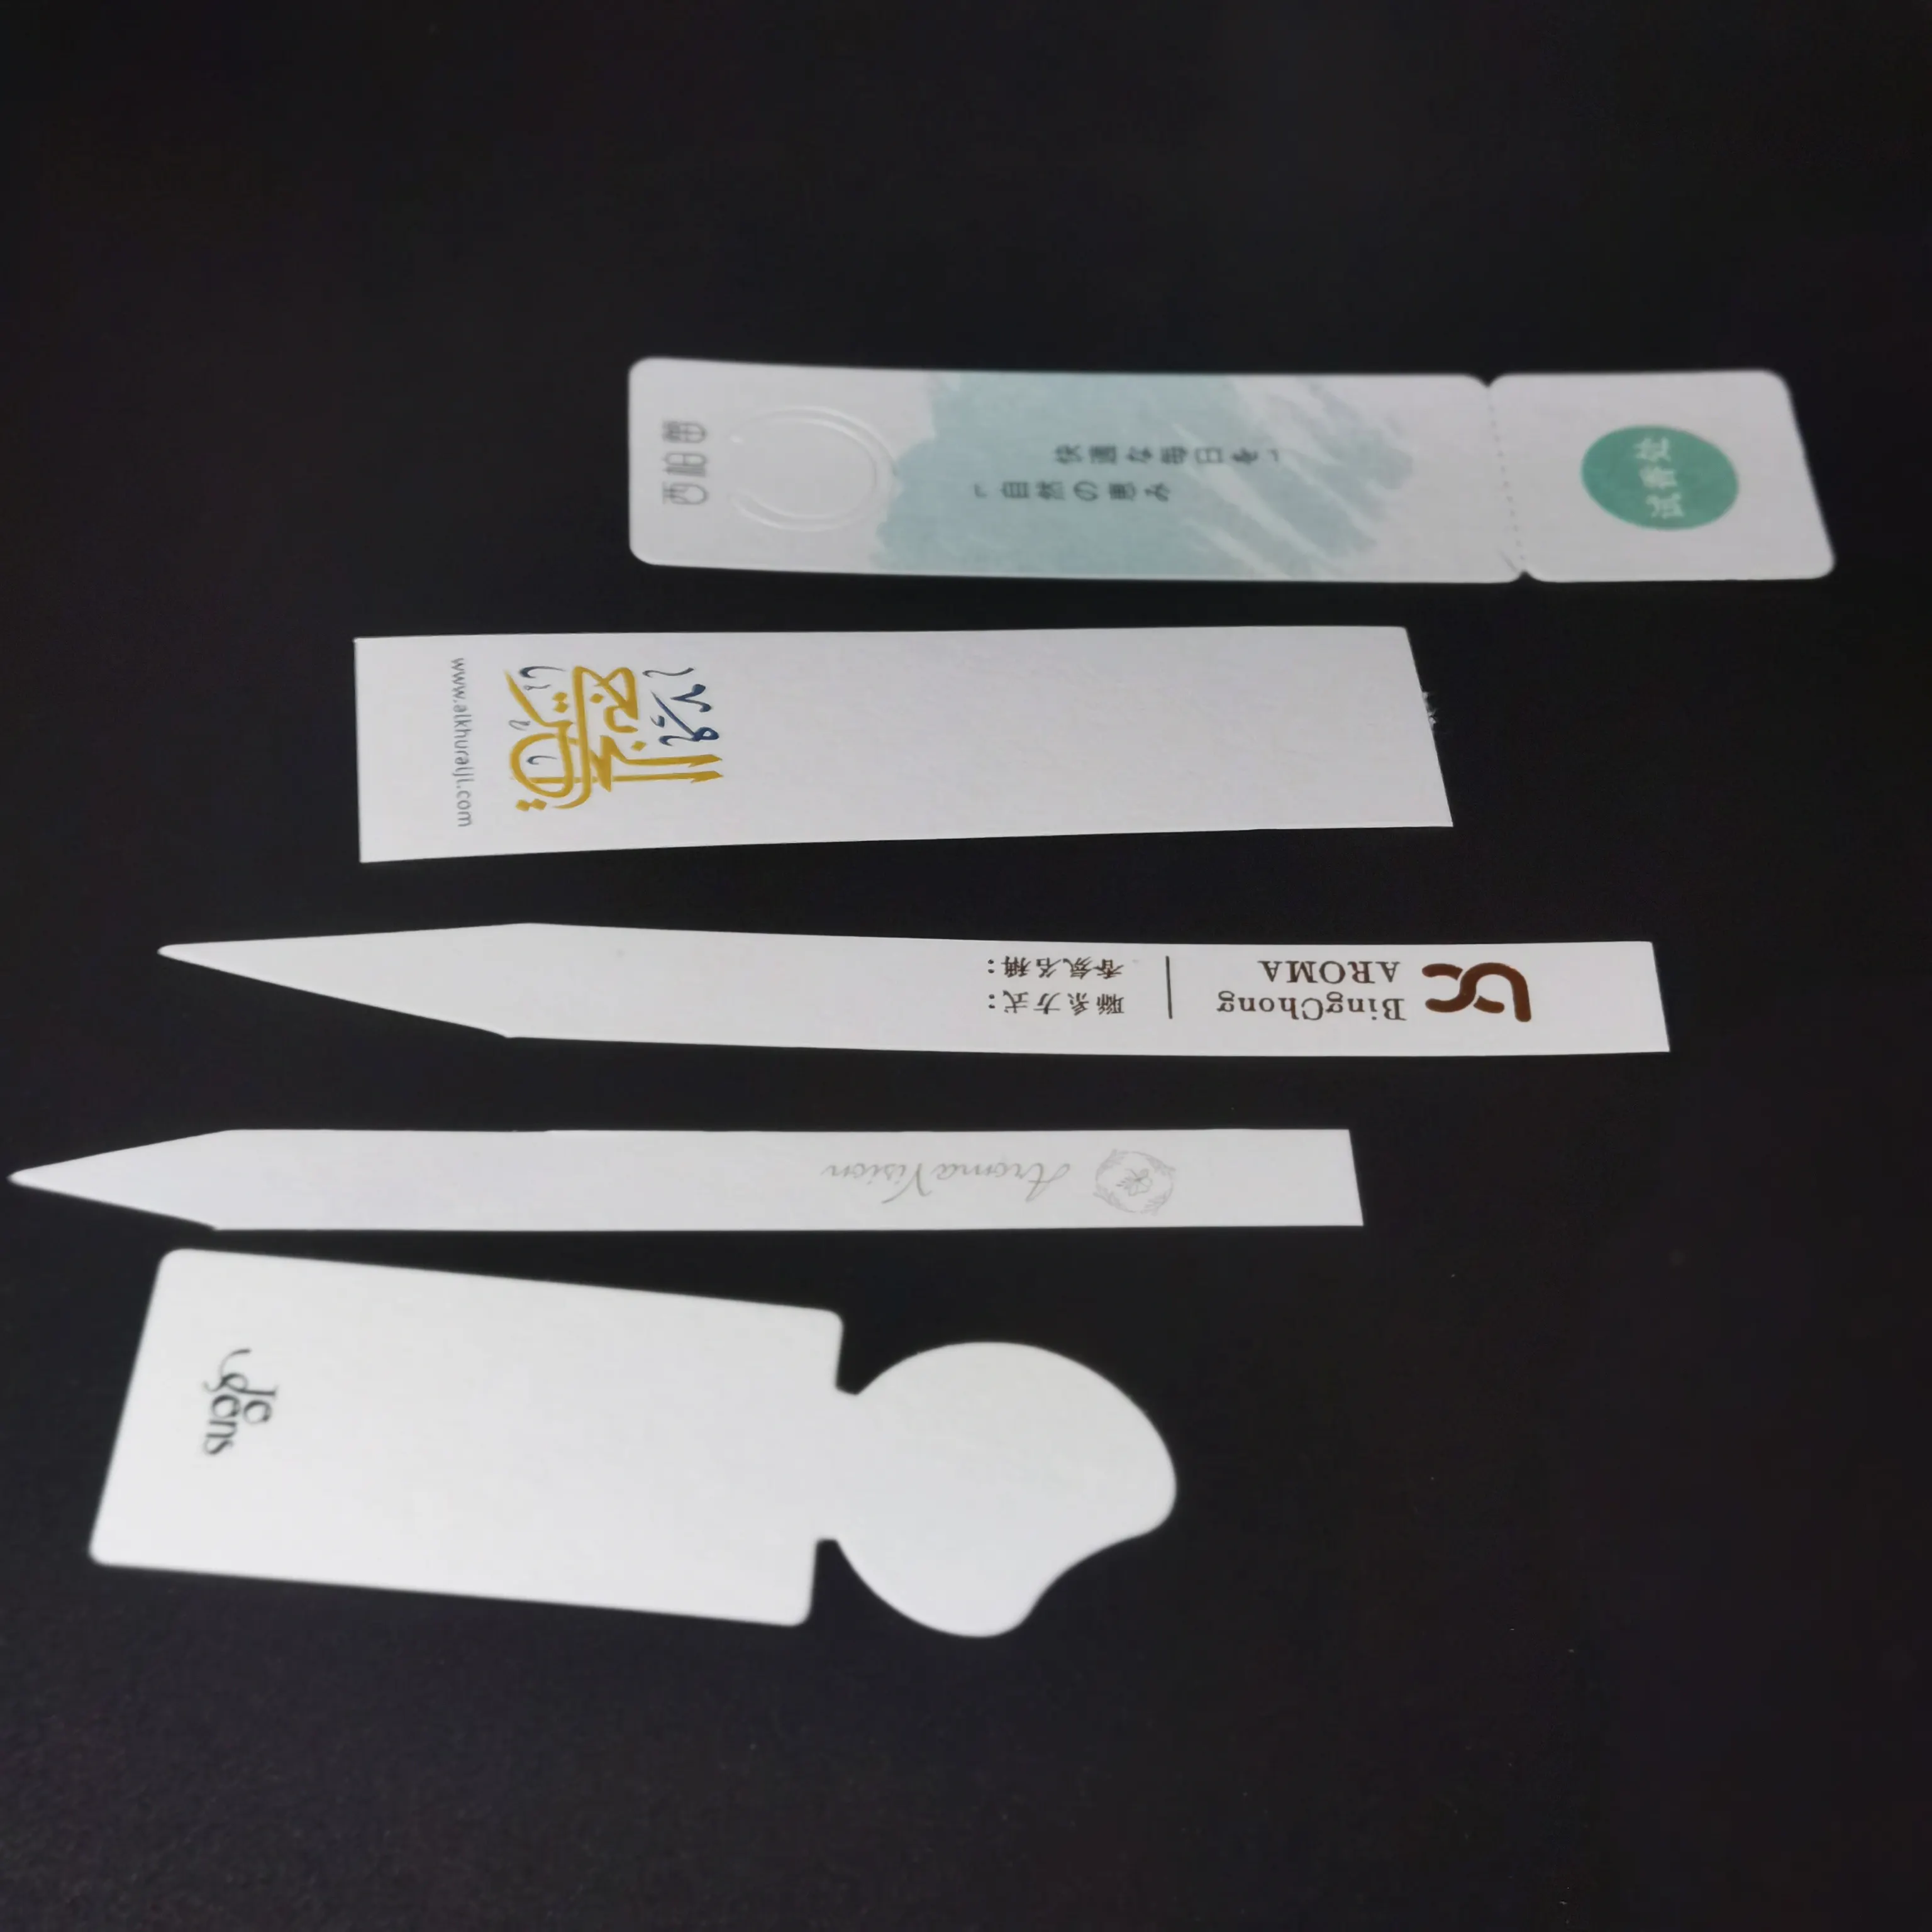 Benutzer definierte saugfähige Parfüm öle Test papier Logo für Gerüche Streifen Duft Blotter